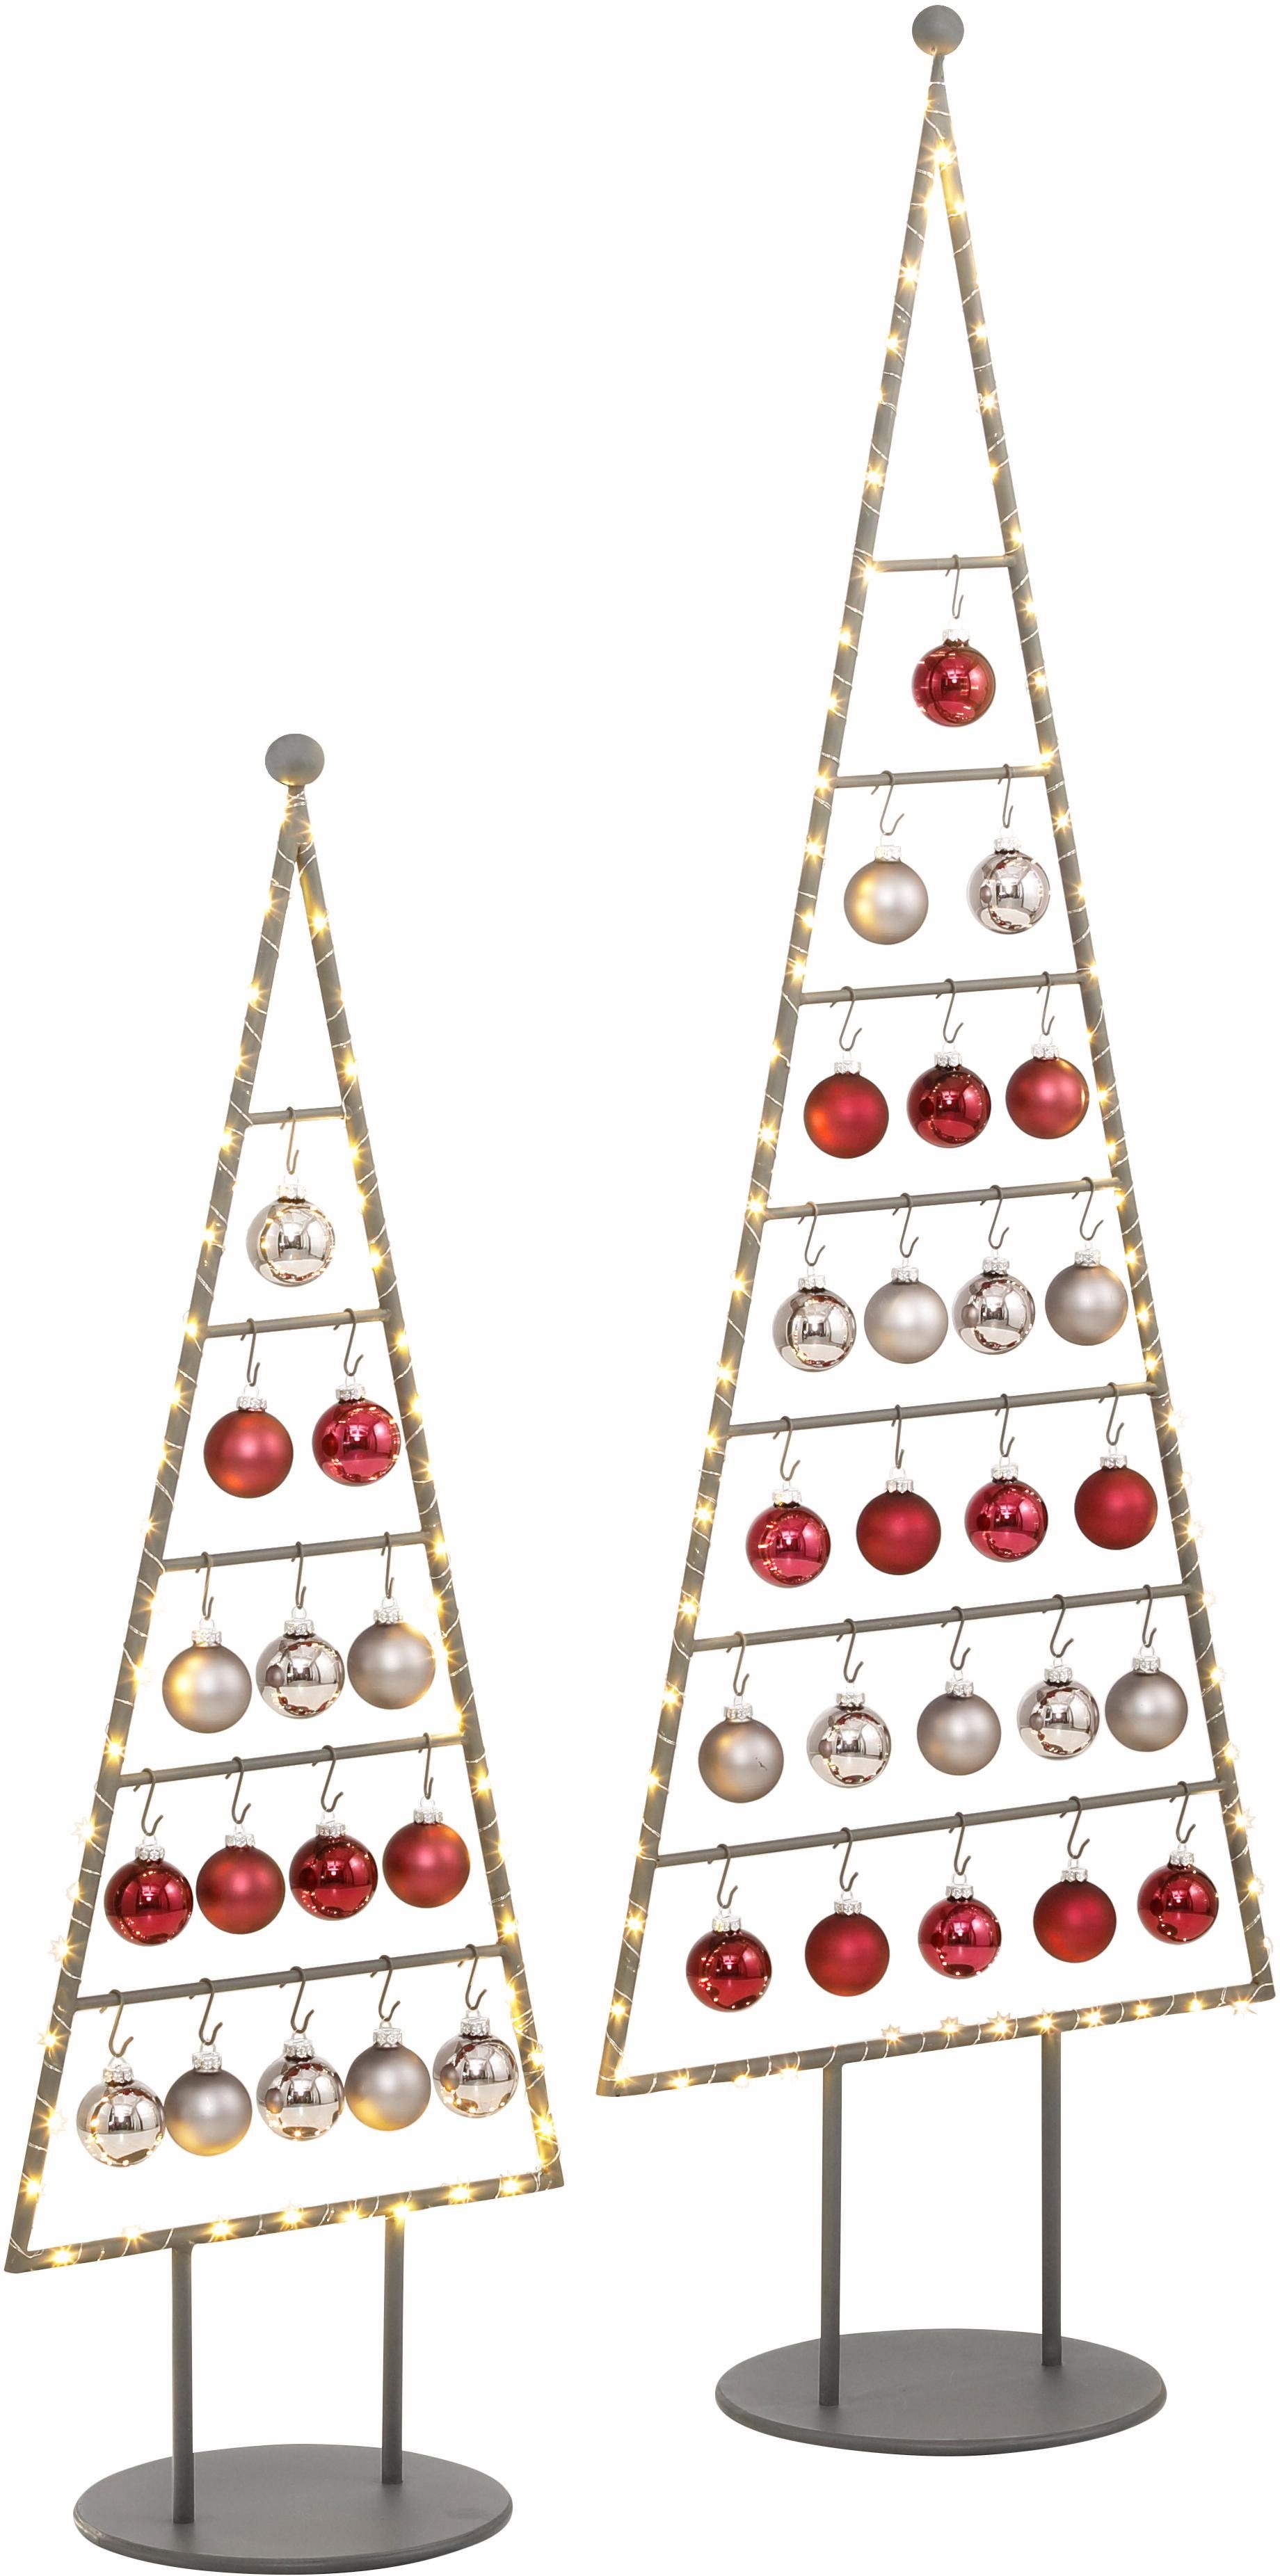 OTTO Kerstboom van metaal in verschillende afmetingen, incl. glazen ballen en micro-ledlichtsnoer